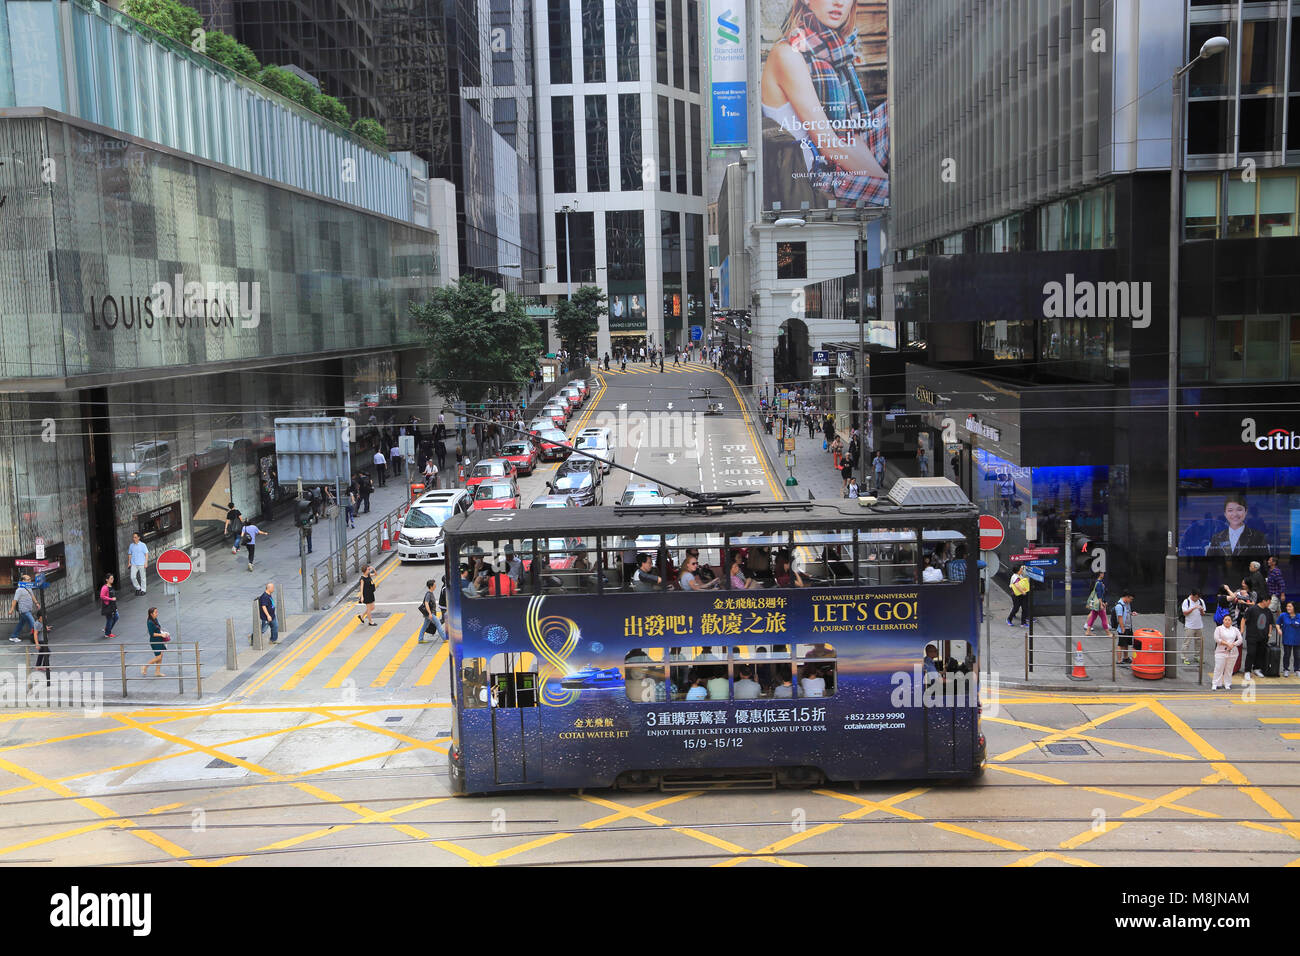 Le tram, le quartier central, l'île de Hong Kong, Hong Kong, Chine, Asie Banque D'Images